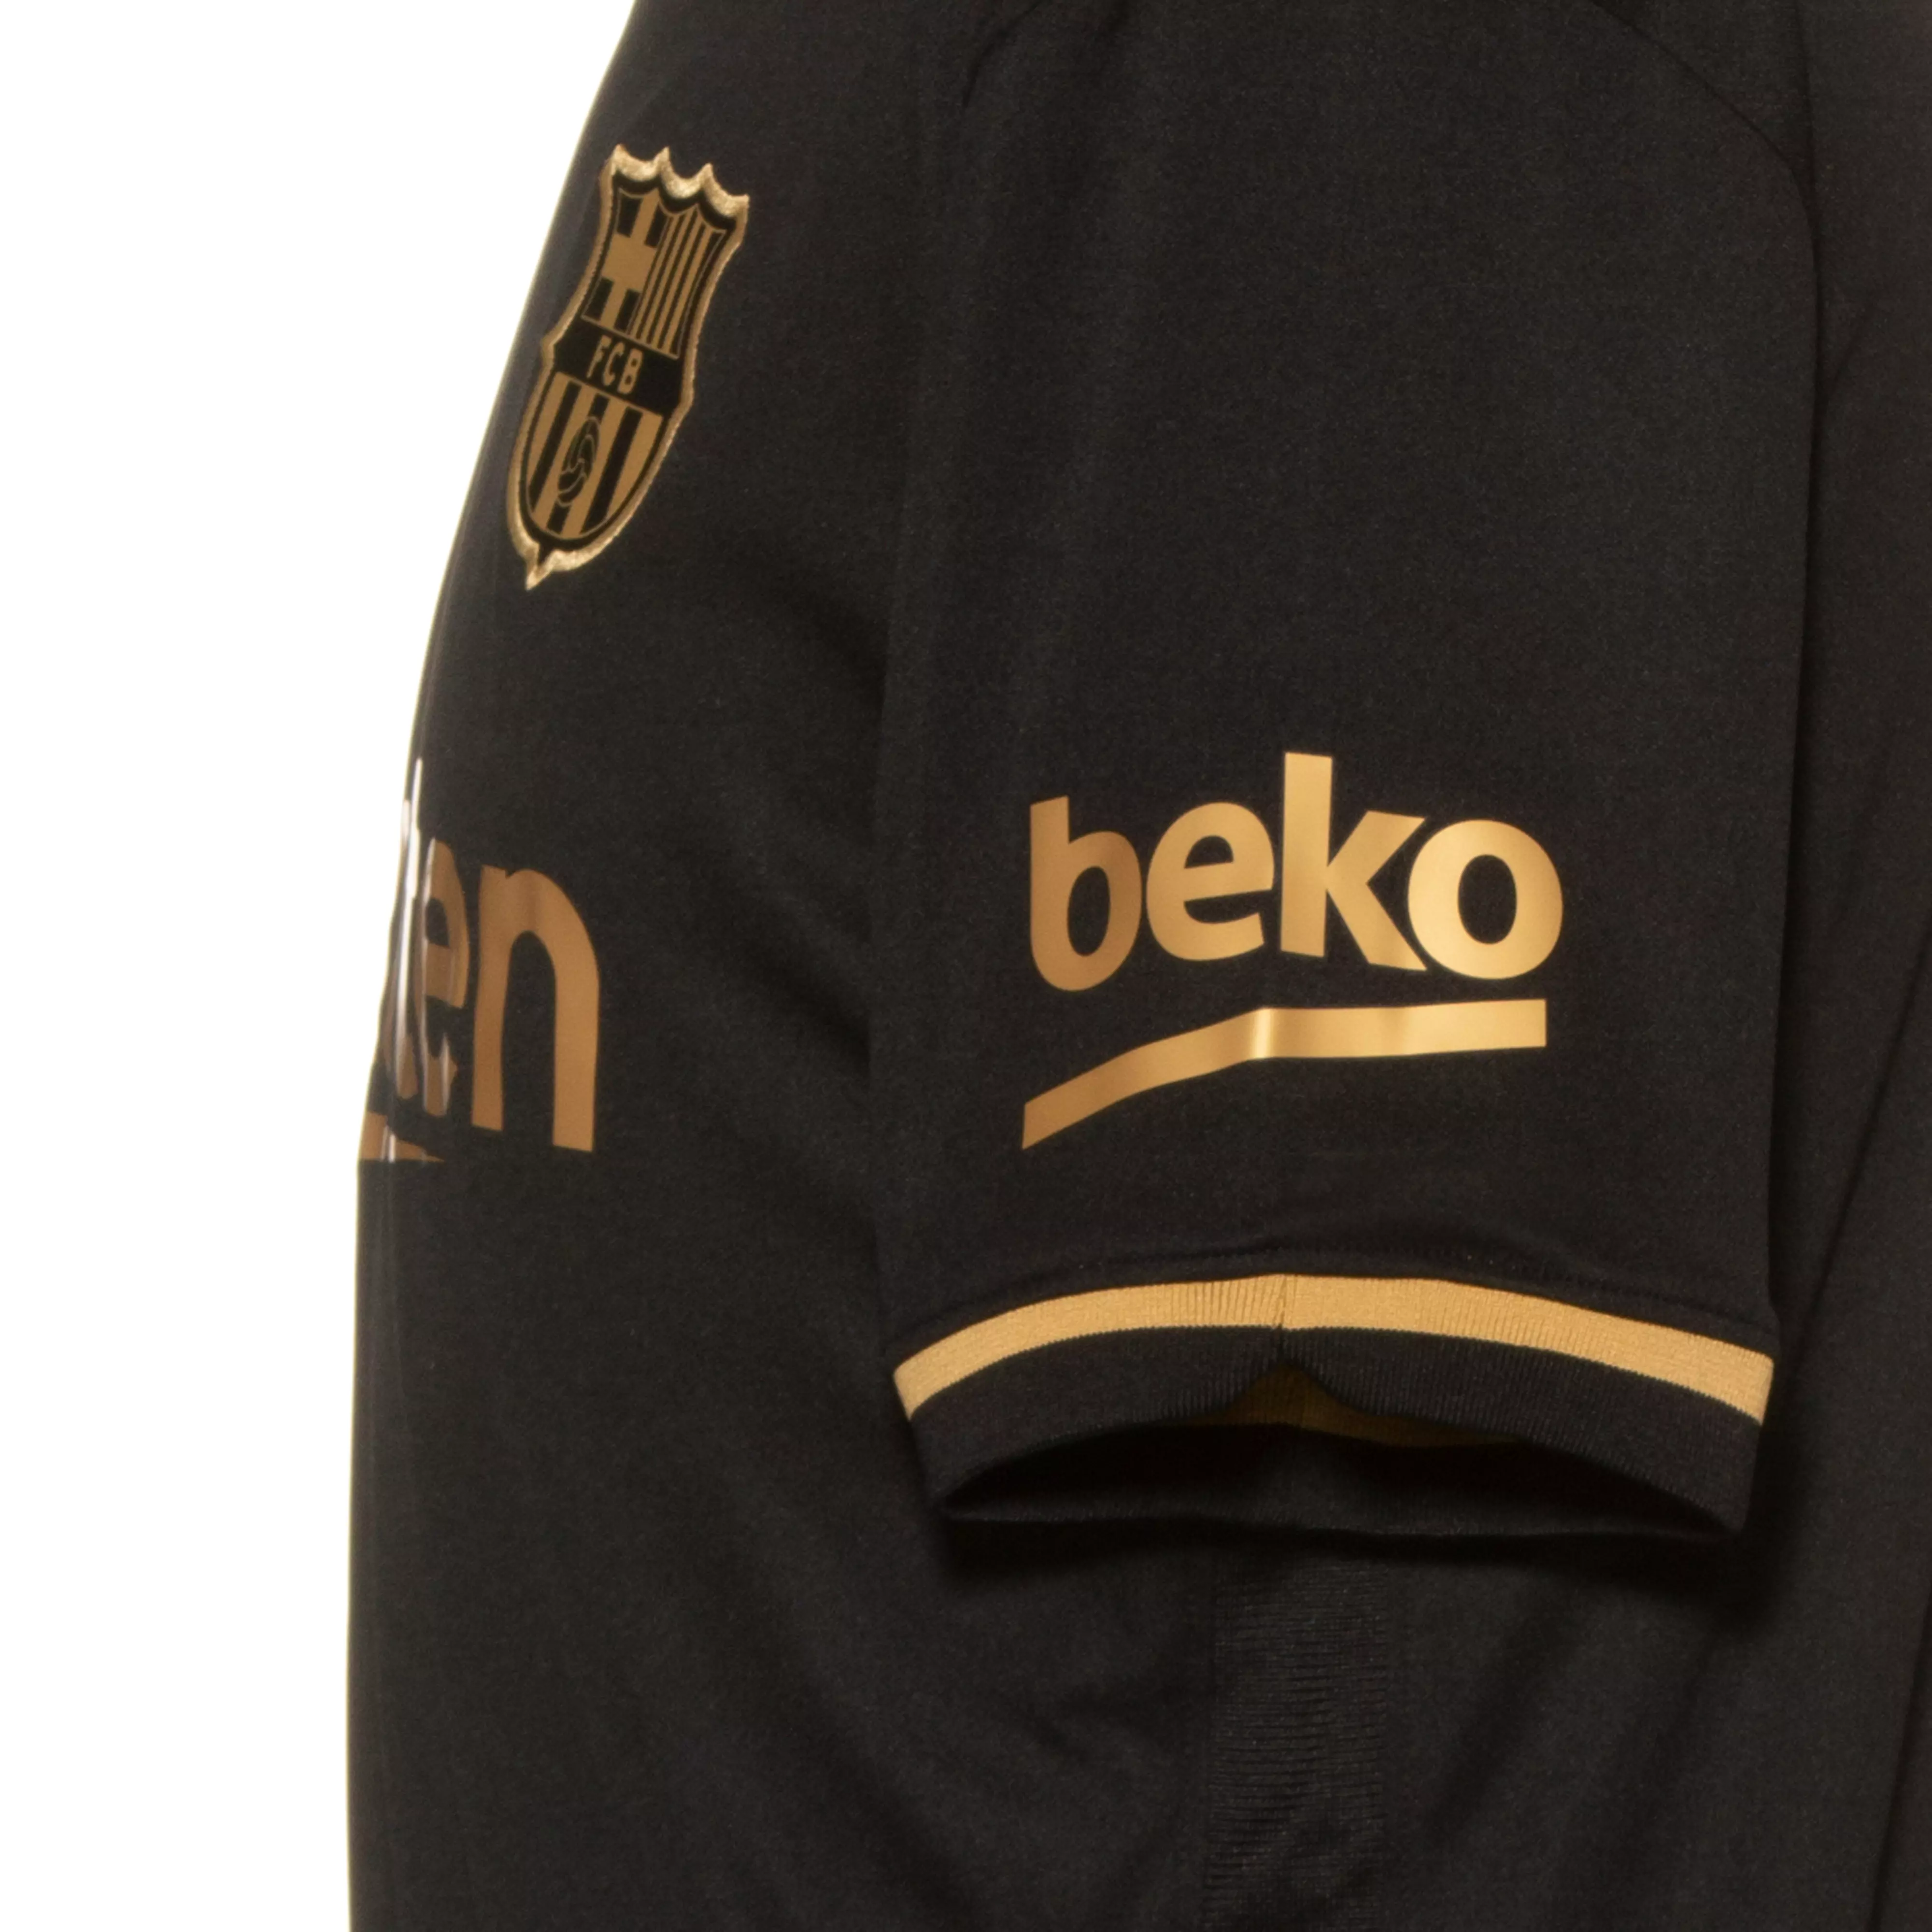 Nike Fc Barcelona 20 21 Auswarts Trikot Herren Black Metallic Gold Im Online Shop Von Sportscheck Kaufen